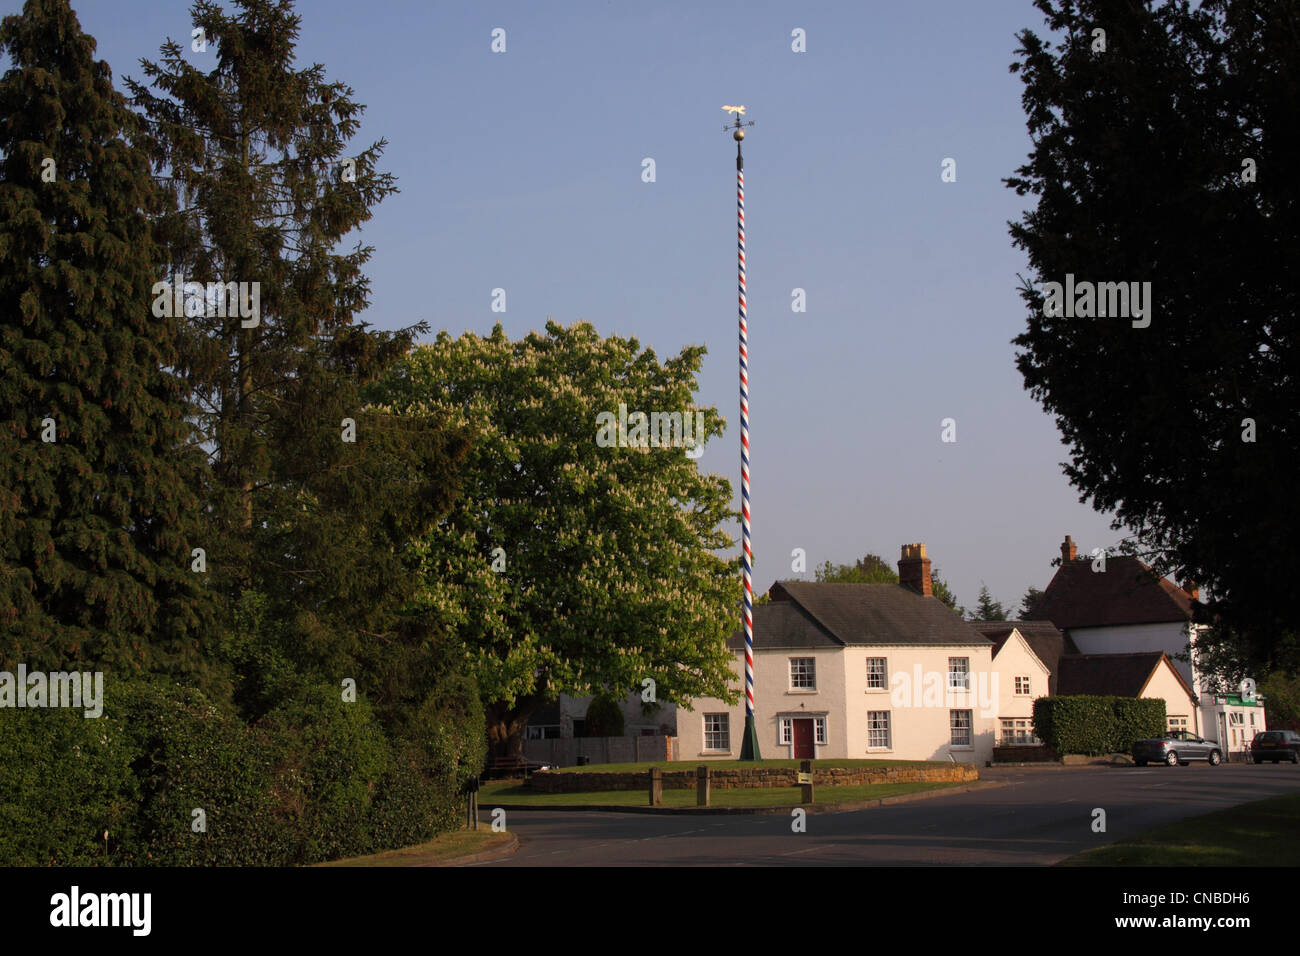 Der Maibaum am Welford on Avon, Warwickshire, eines der höchsten Maistange in England - 65 Fuß (20 m) Stockfoto